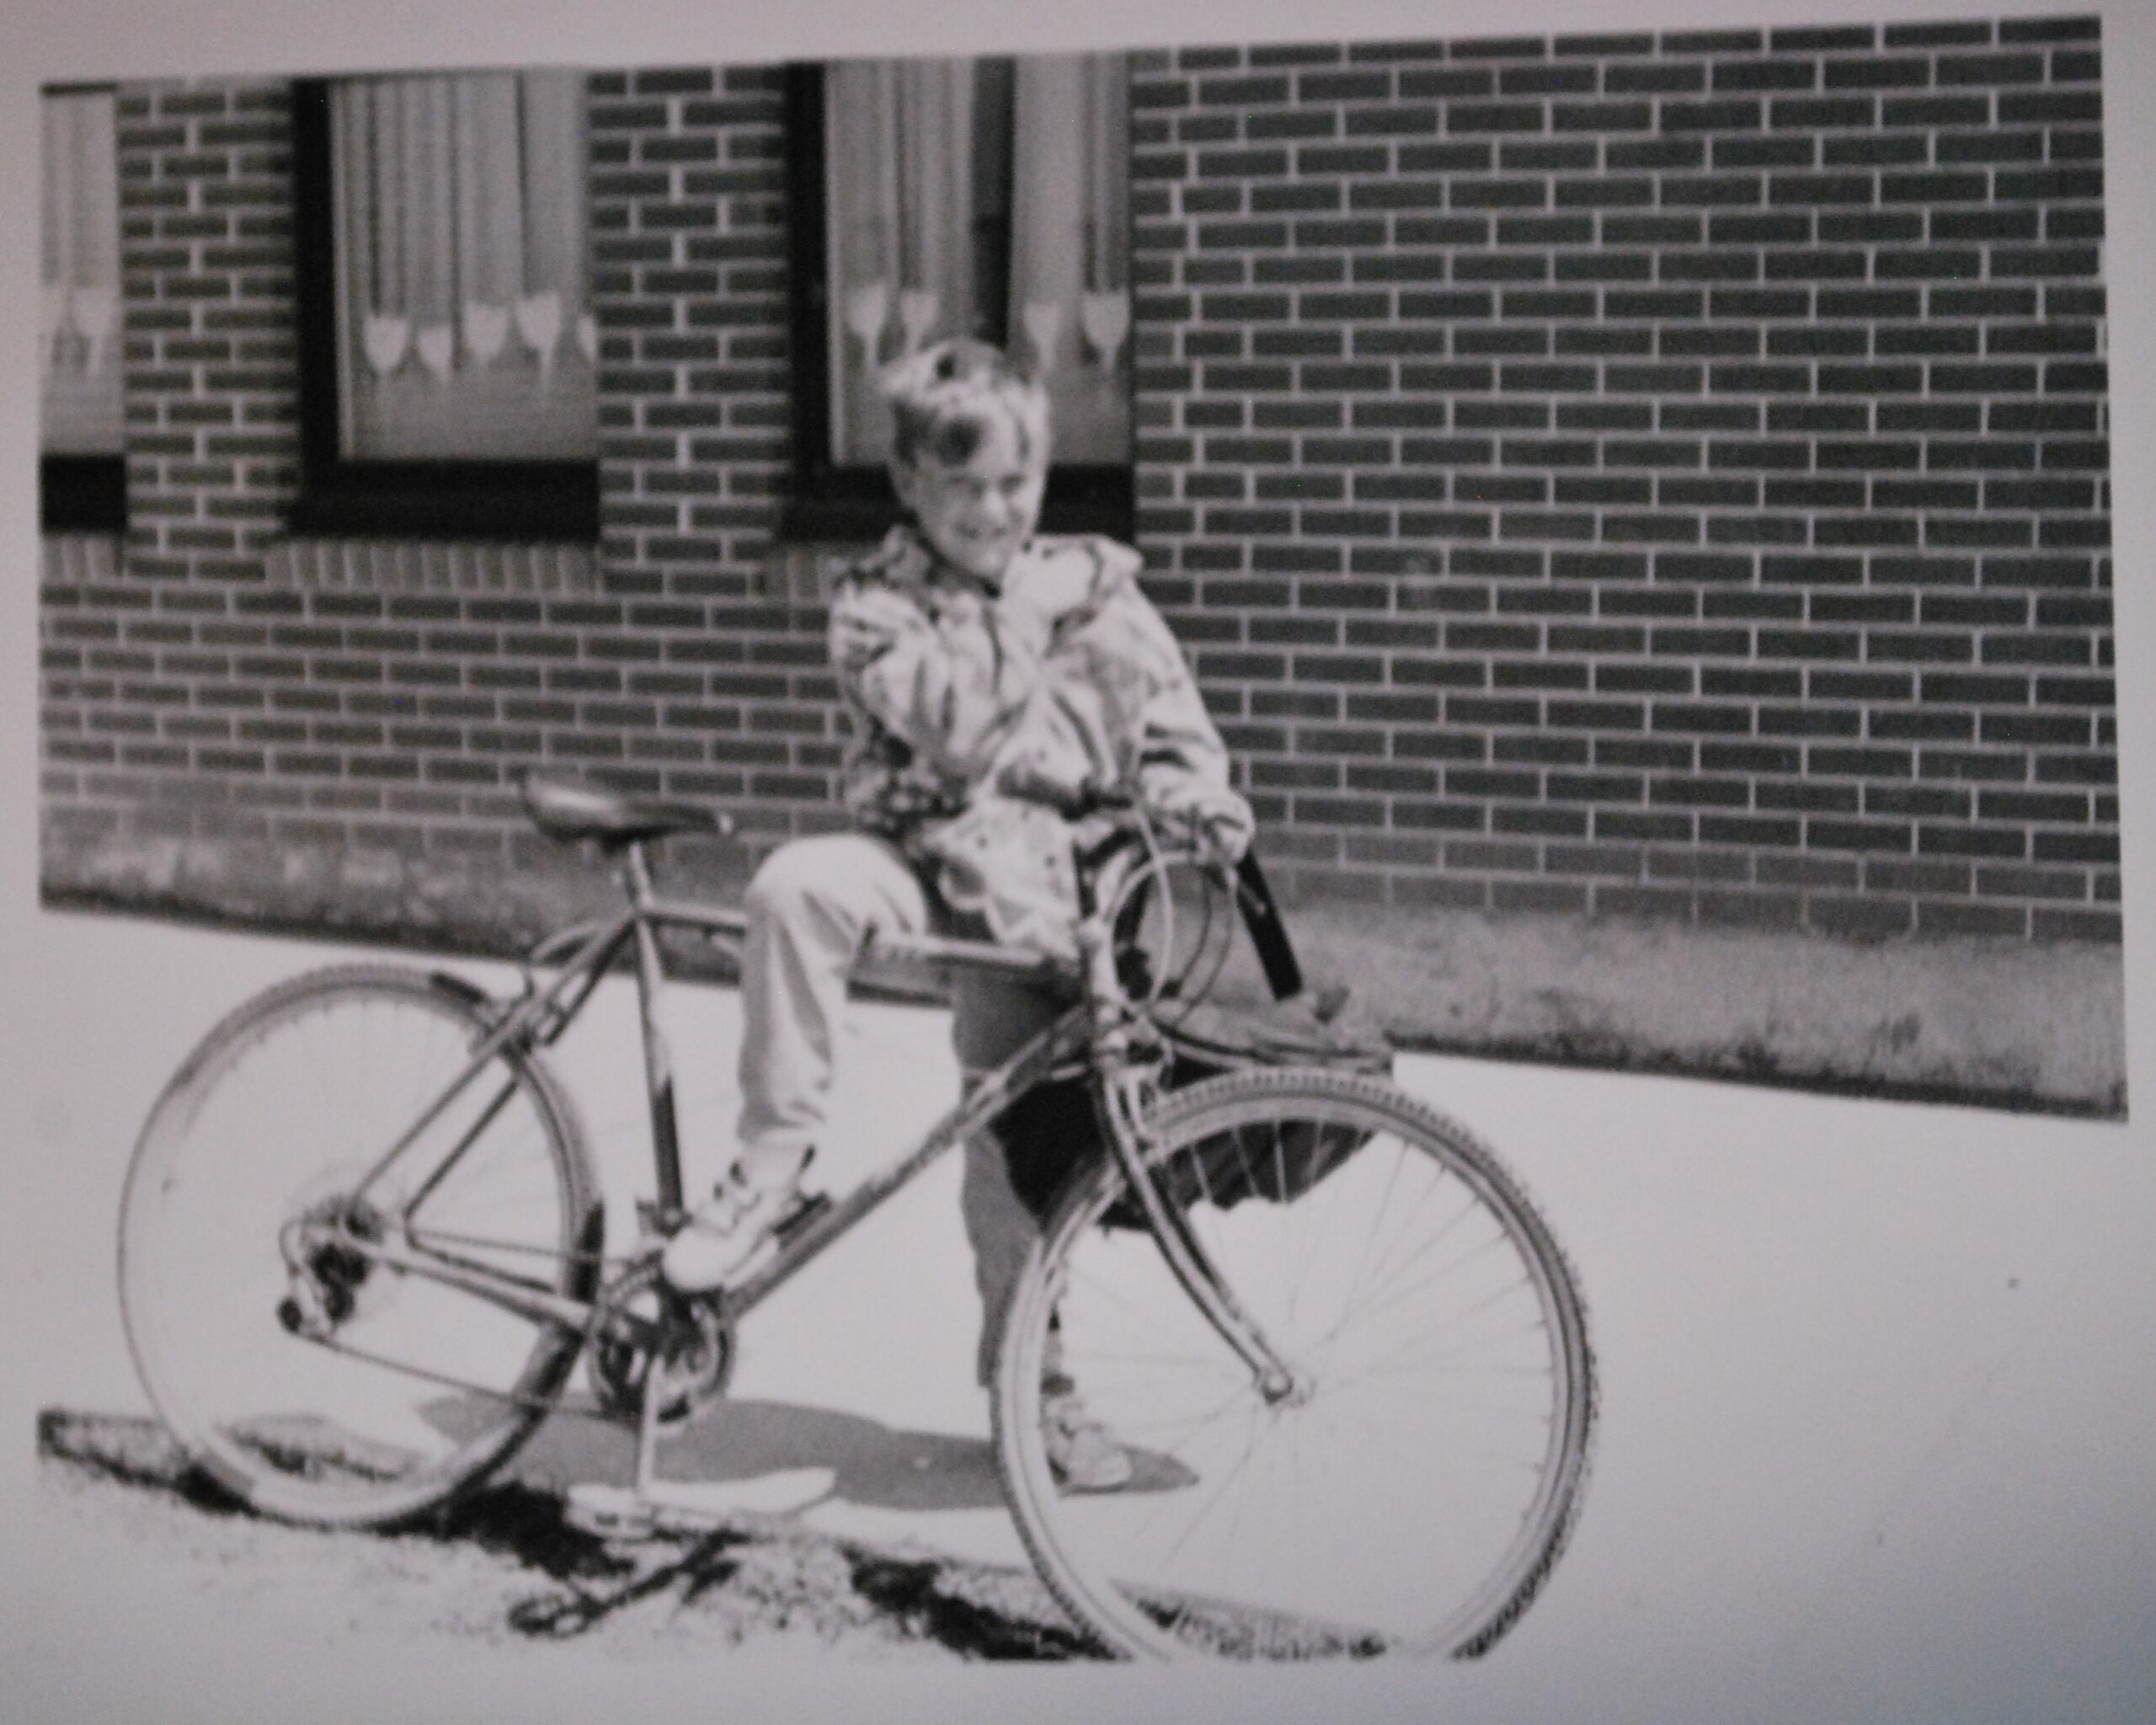 Une photo noire et blanc d'un jeune garçon avec une bicyclette.